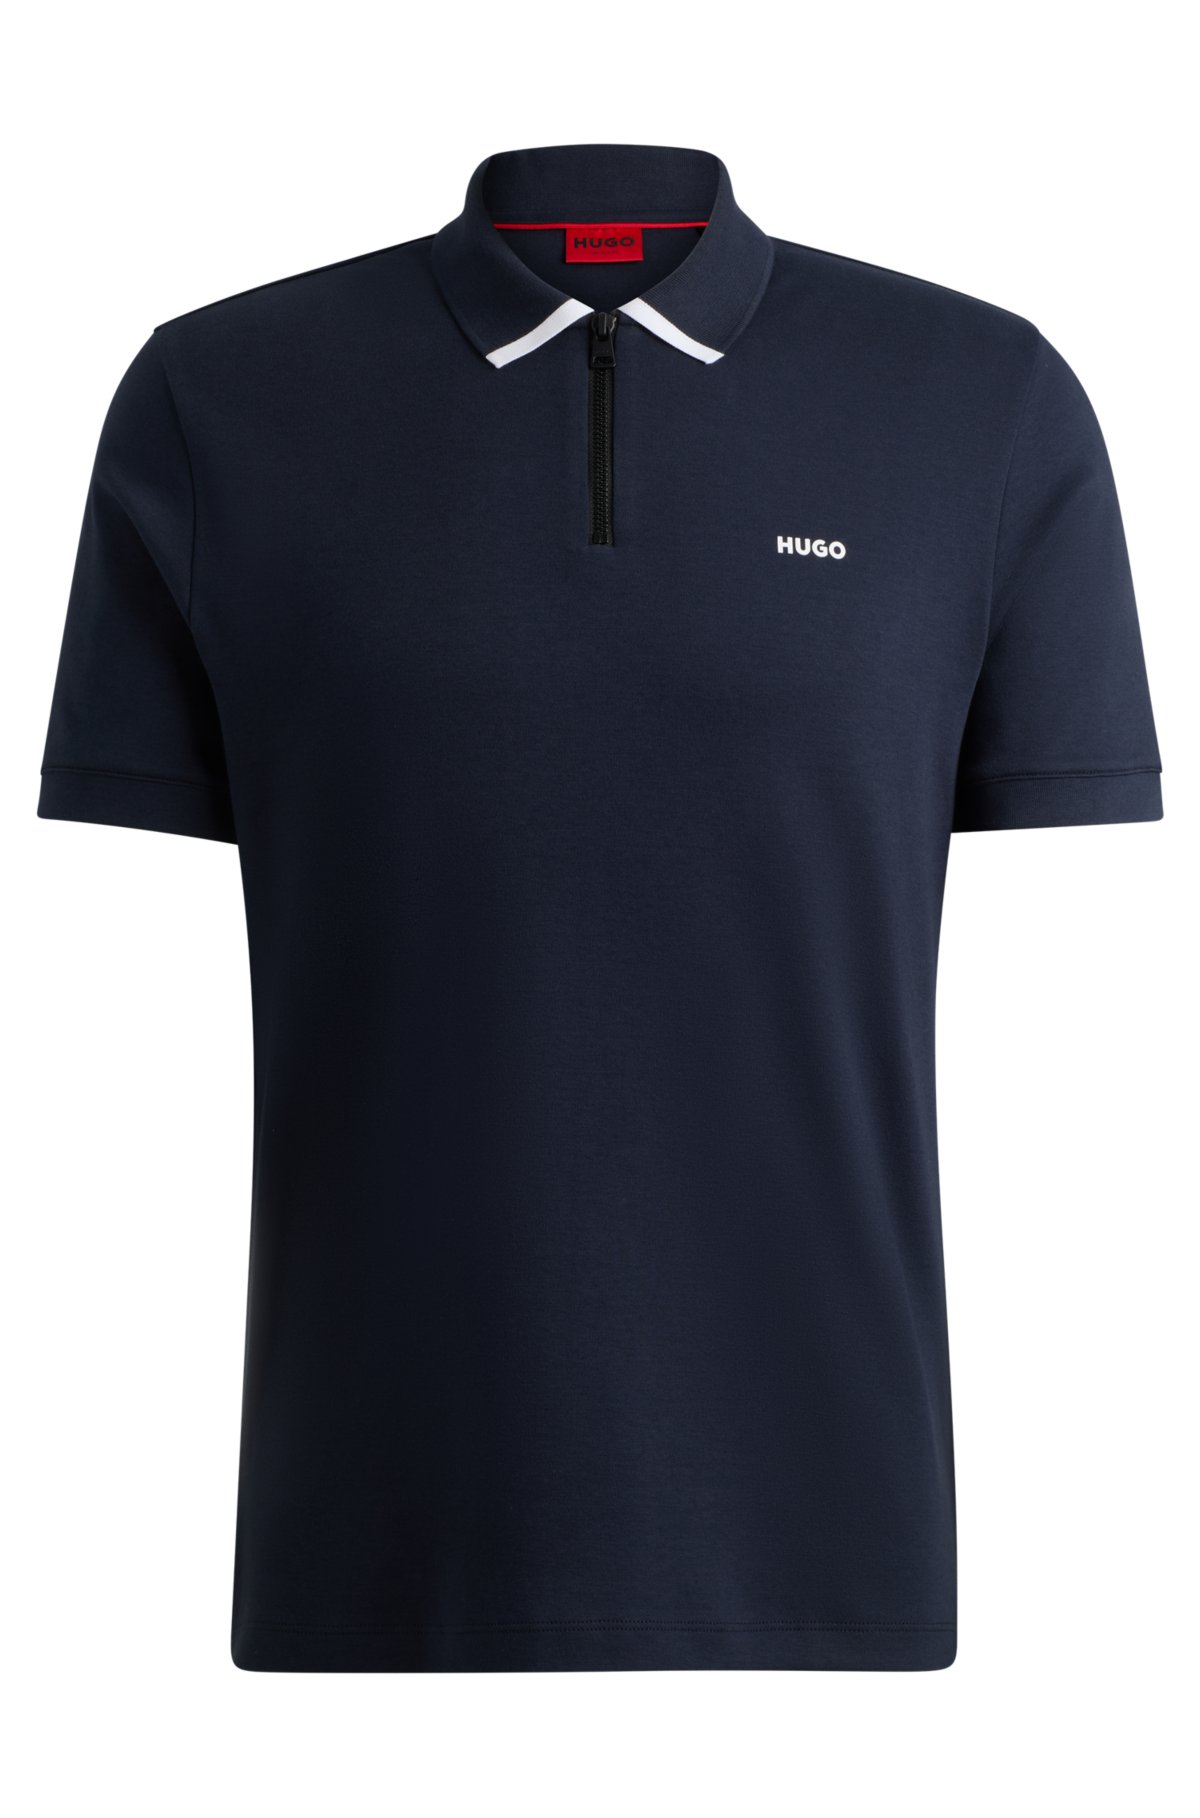 Cotton-piqué polo shirt with contrast logo, Dark Blue